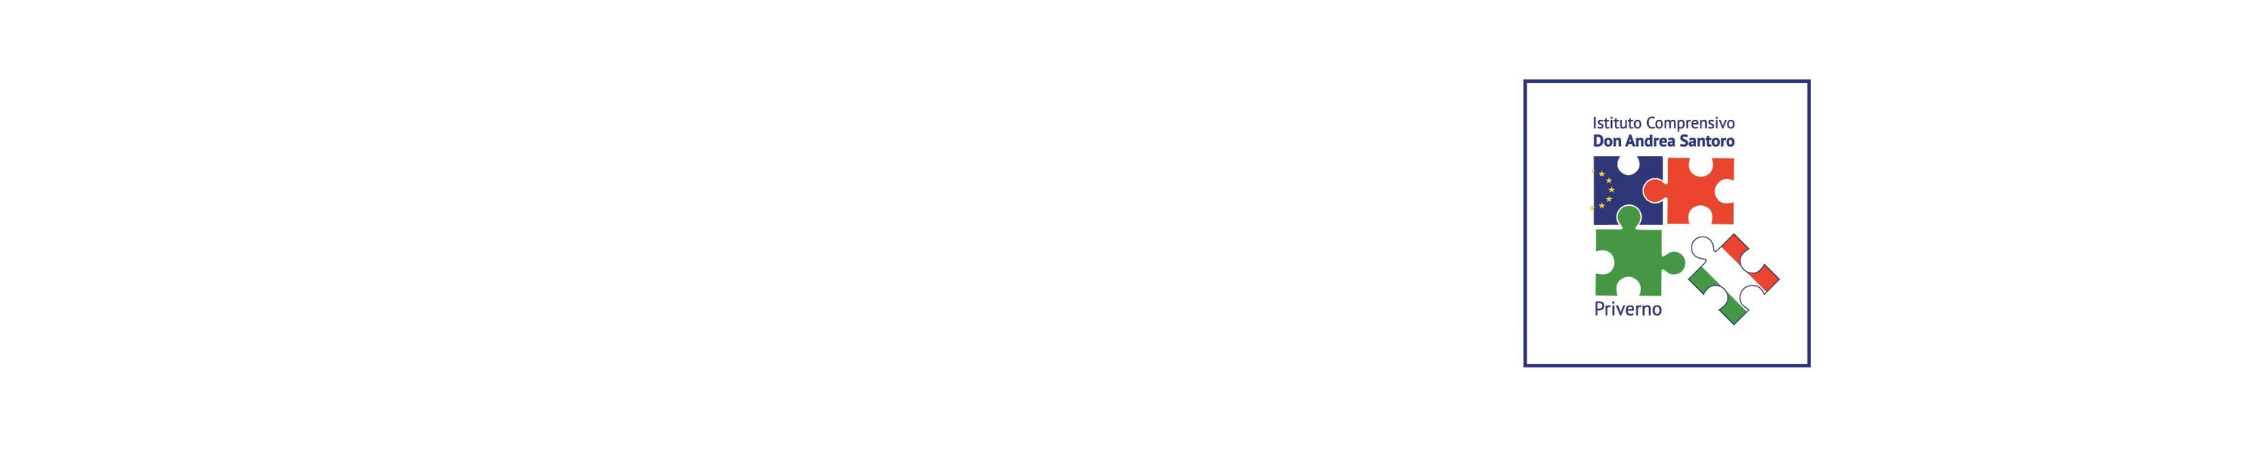 Istituto Comprensivo DON ANDREA SANTORO - PRIVERNO 